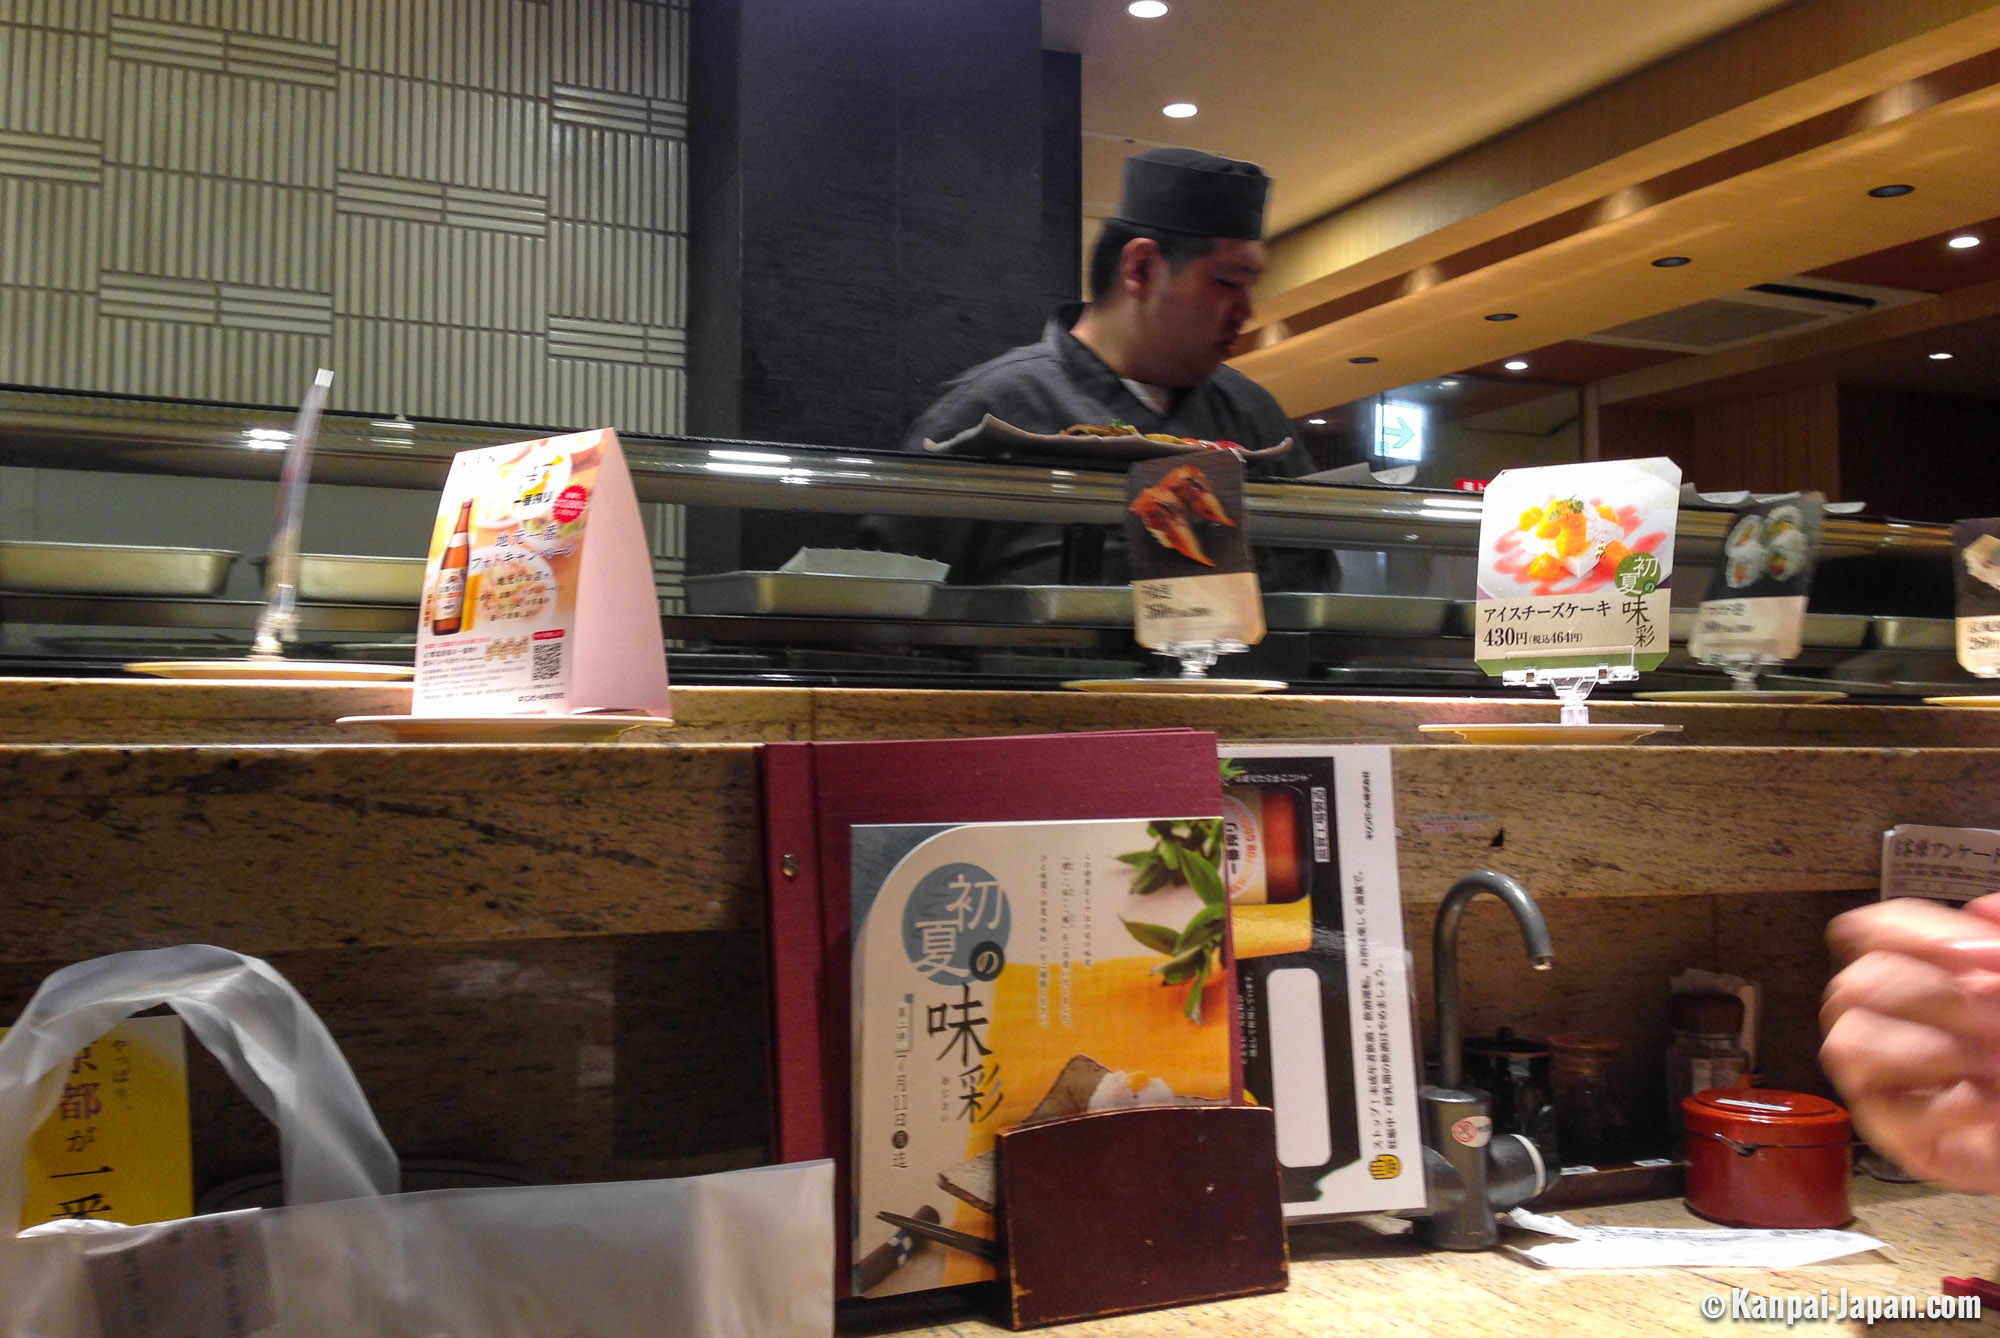 Chojiro Shijo Kiyamachi - The Upscale Sushi Bar in Downtown Kyoto